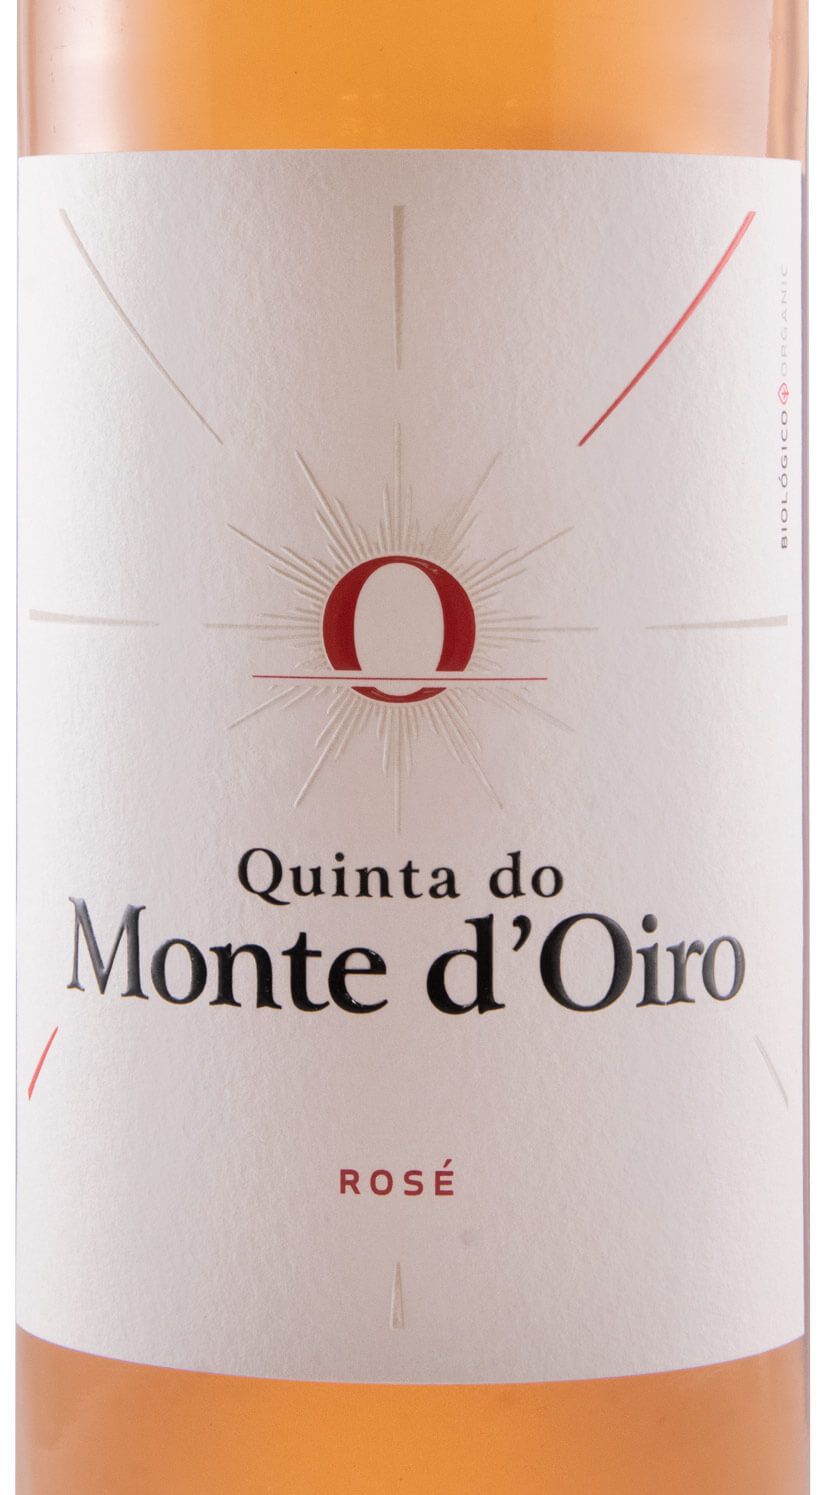 2020 Quinta Monte d'Oiro organic rose